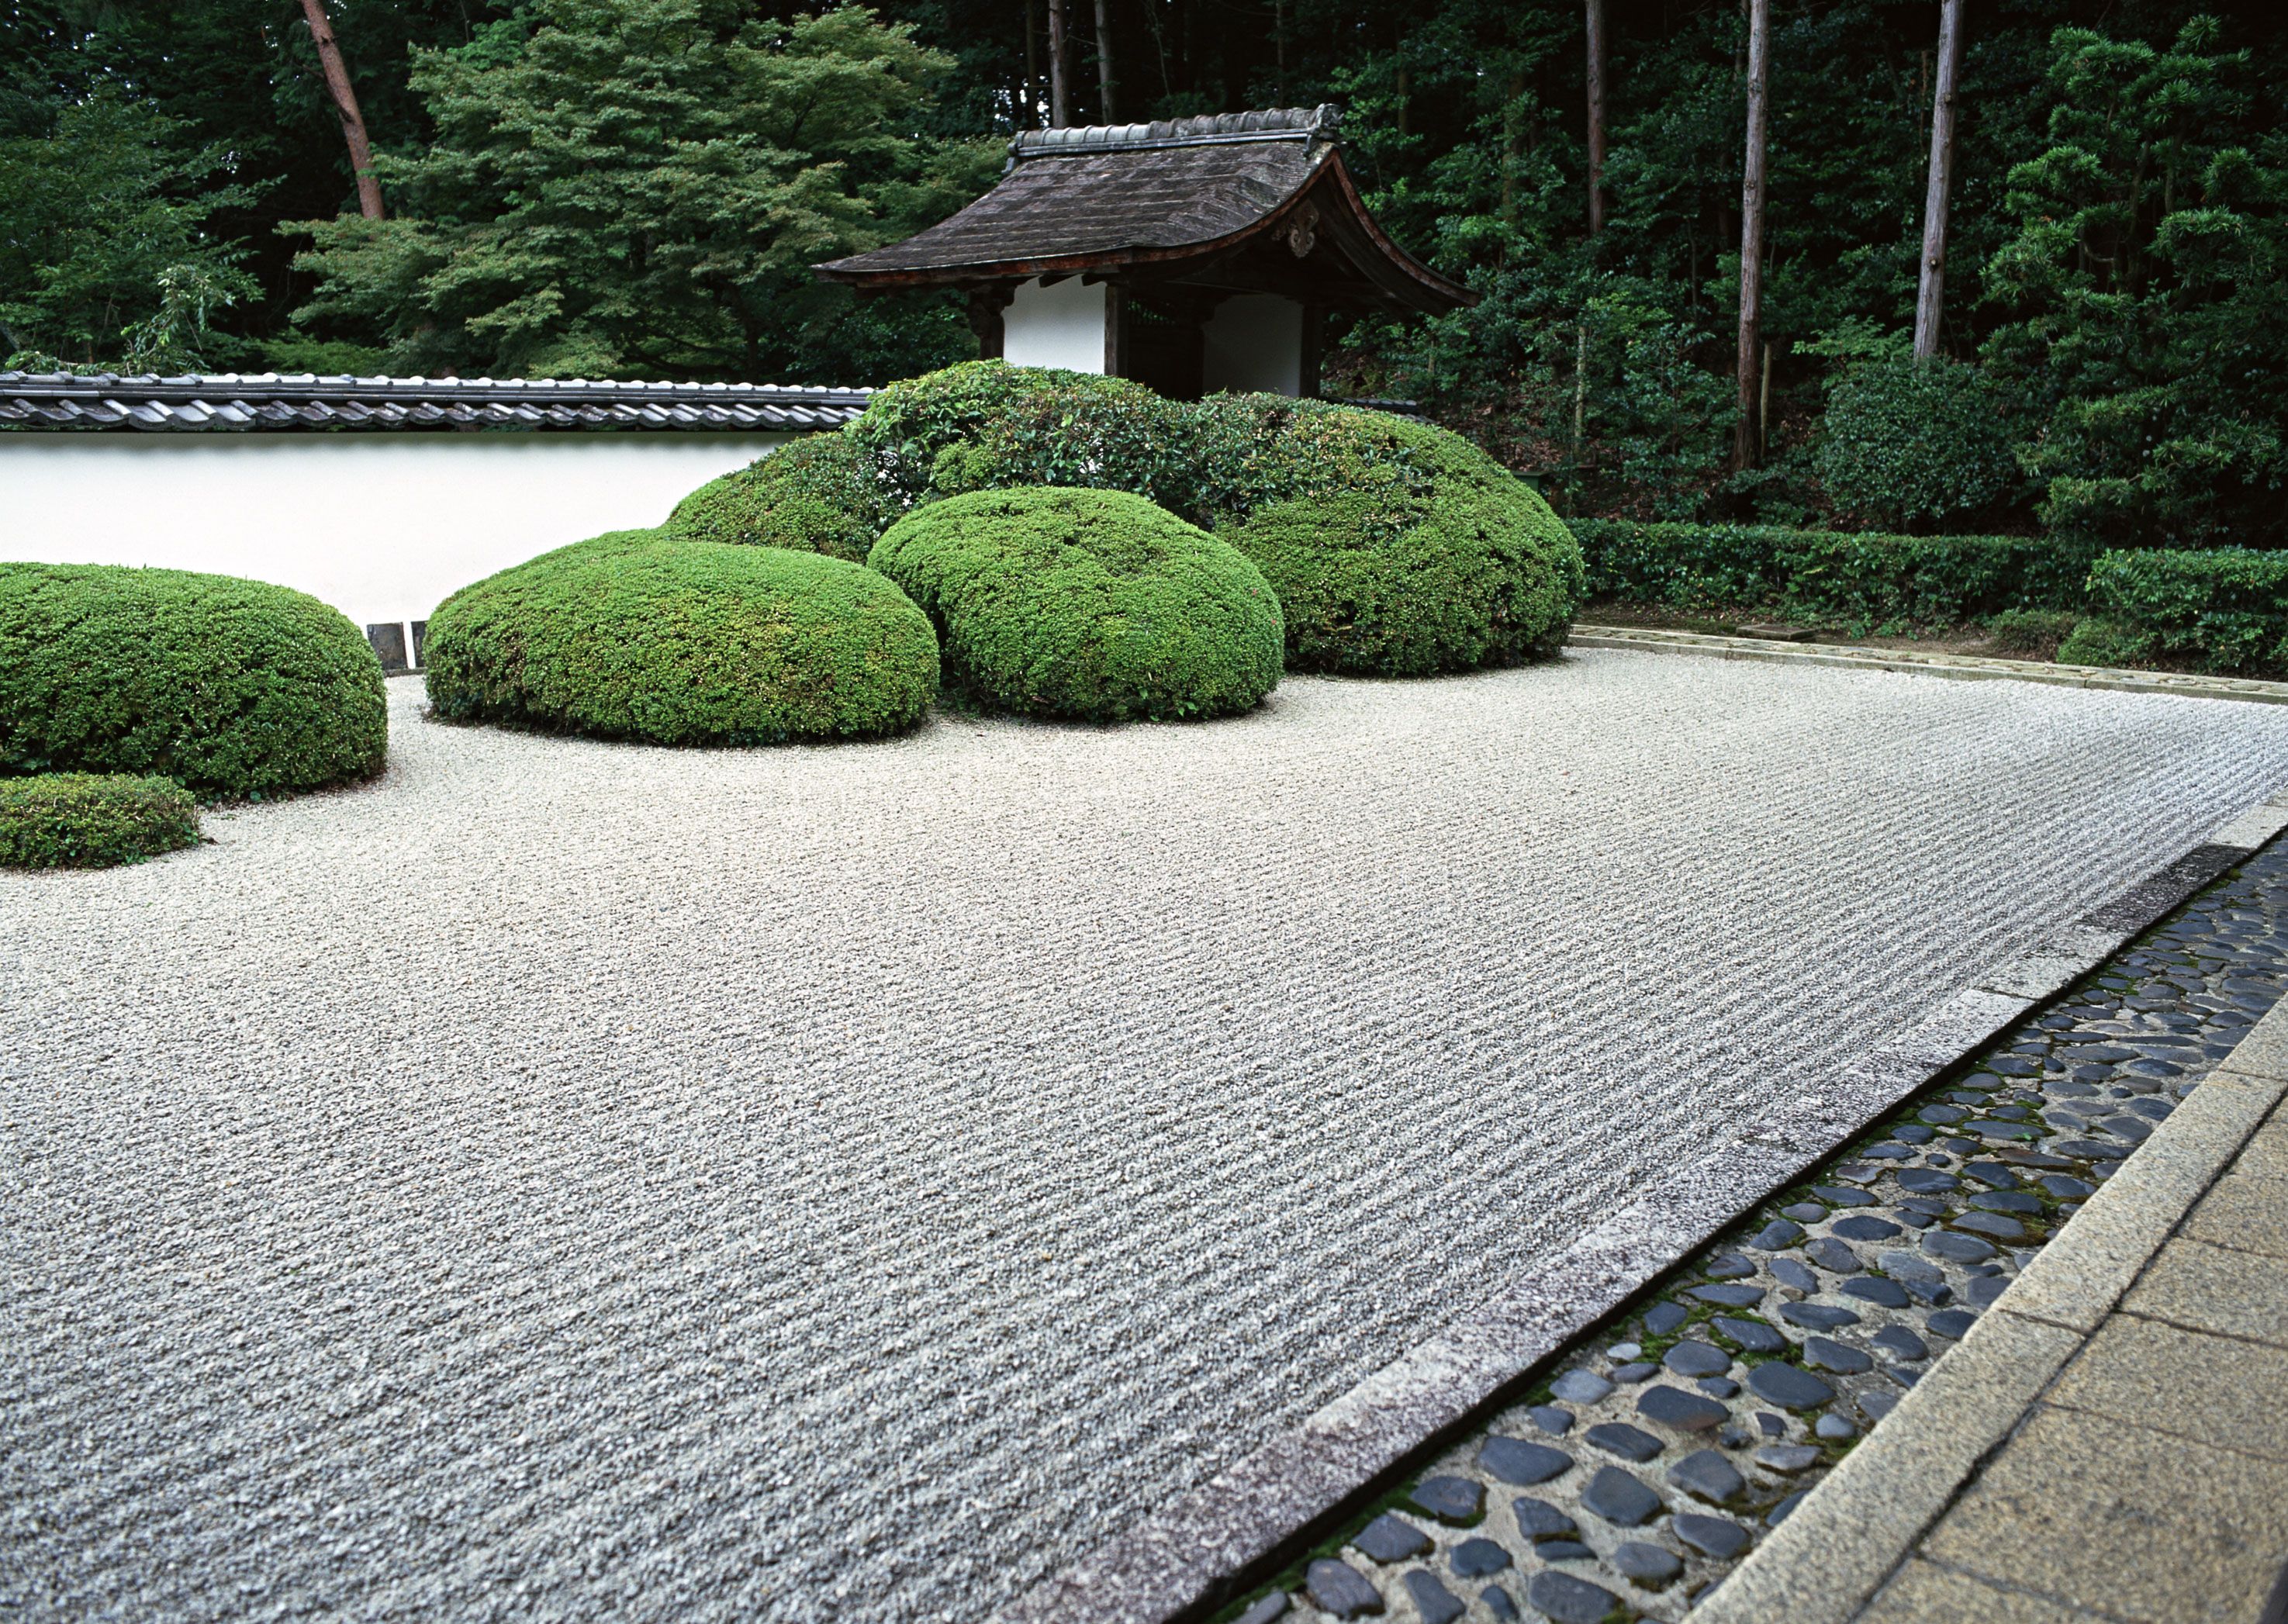 Создание японского сада камней на даче: пошаговая инструкция достижения гармонии